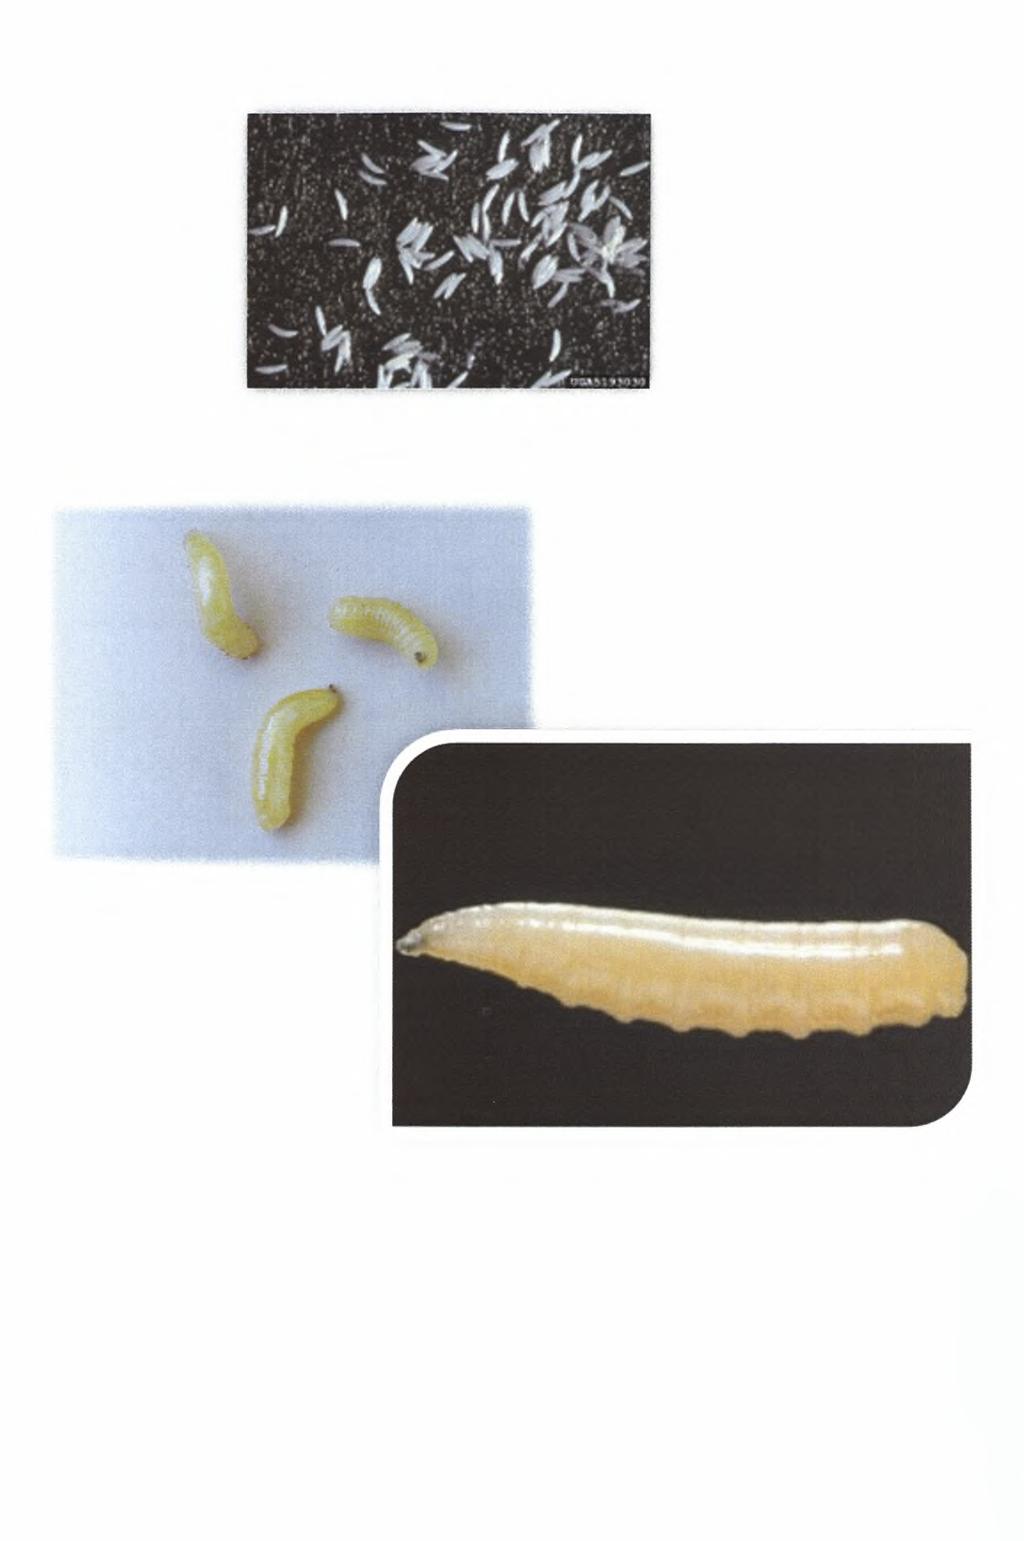 Εικόνα 3: Αυγά μύγας της Μεσογείου (http://www.invasive.